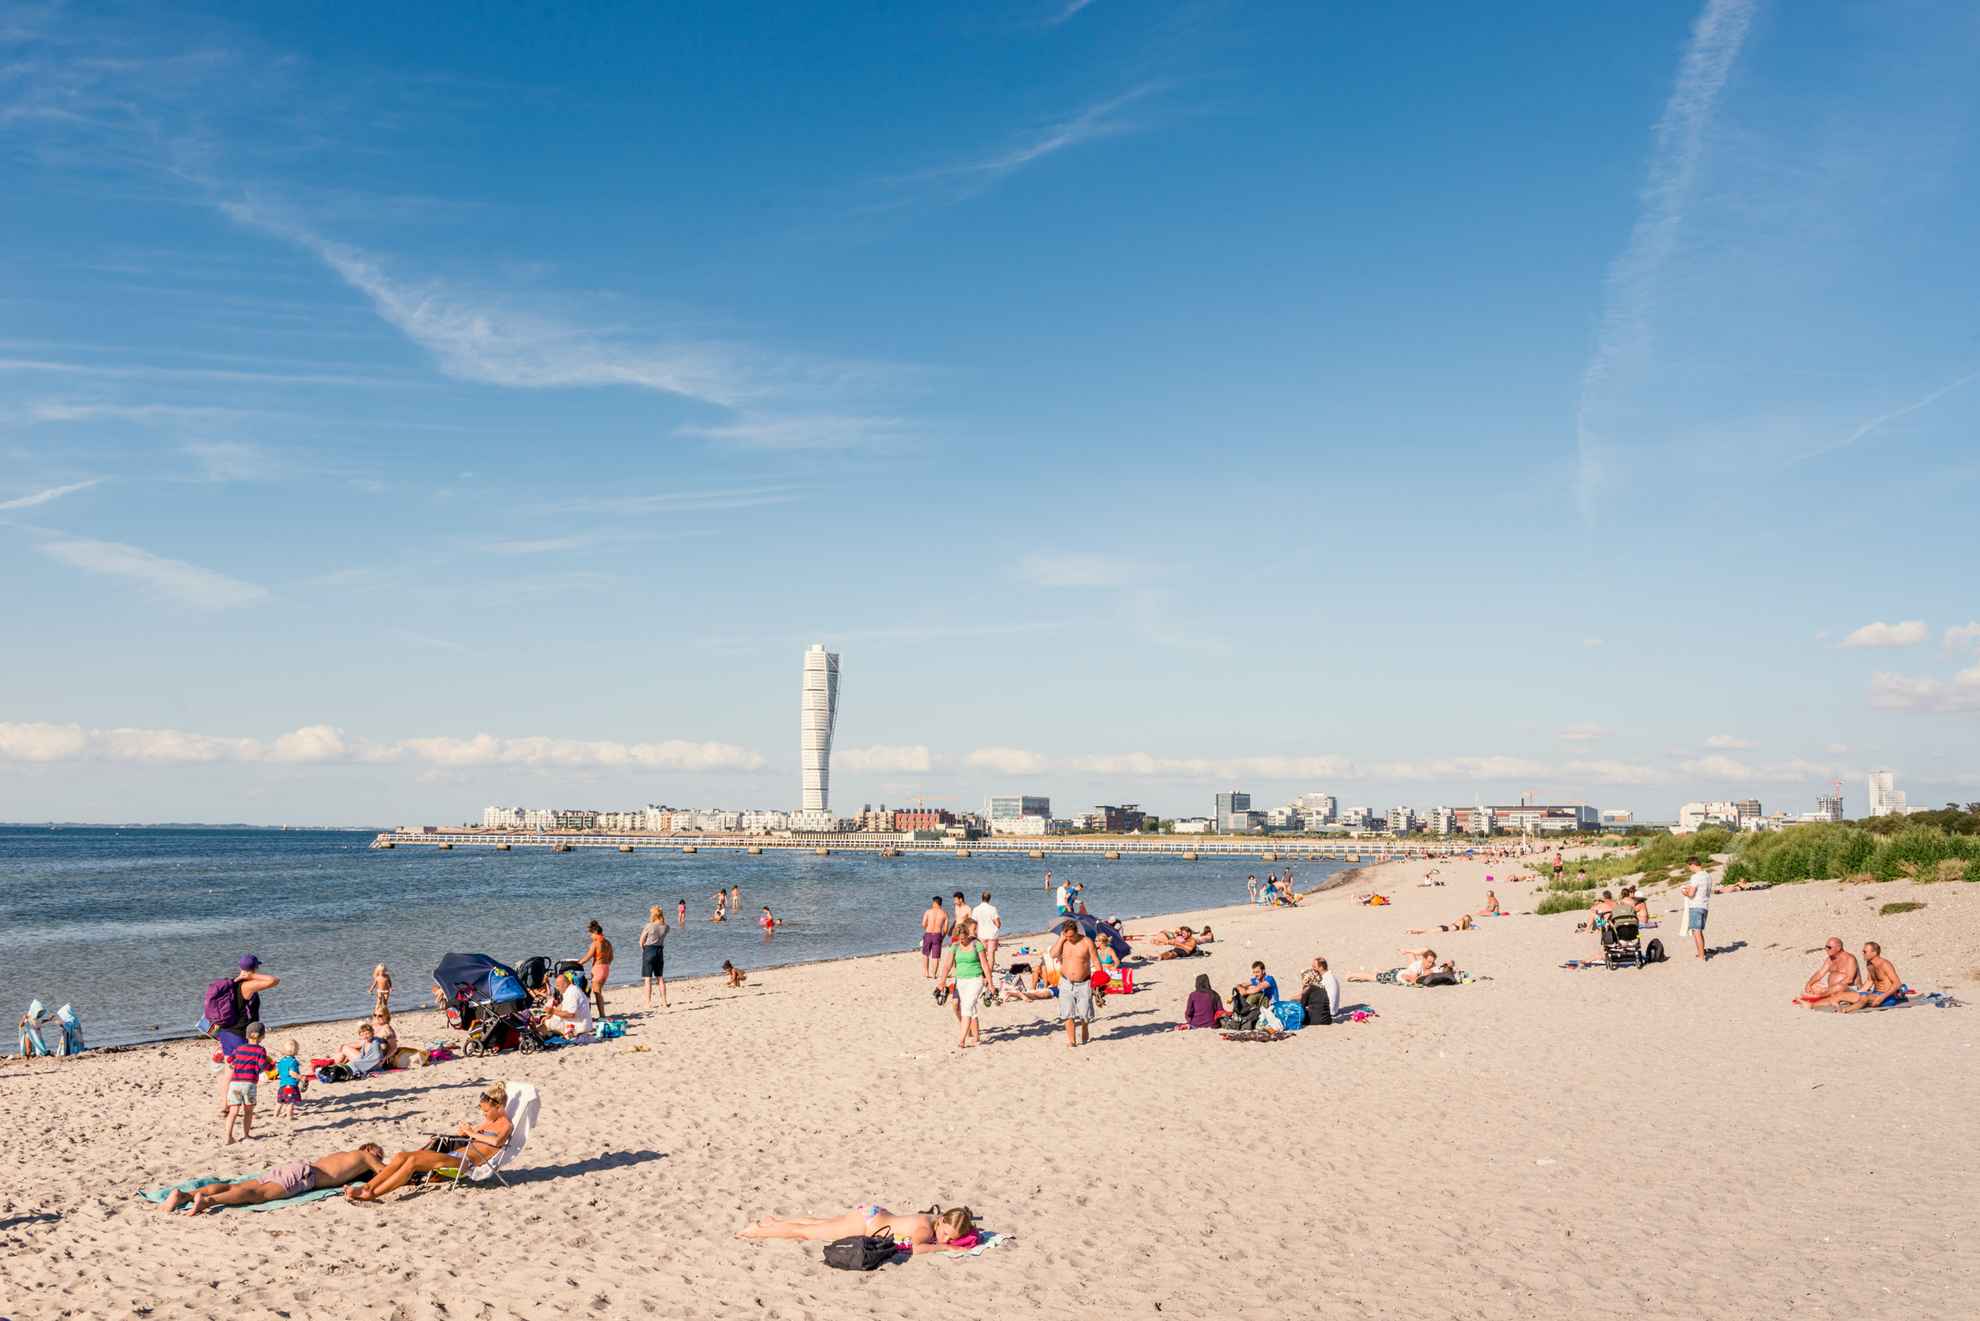 Menschen, die sich an einem Strand in Malmö vergnügen. Am Horizont ist das Gebäude "Turning Torso" zu sehen.